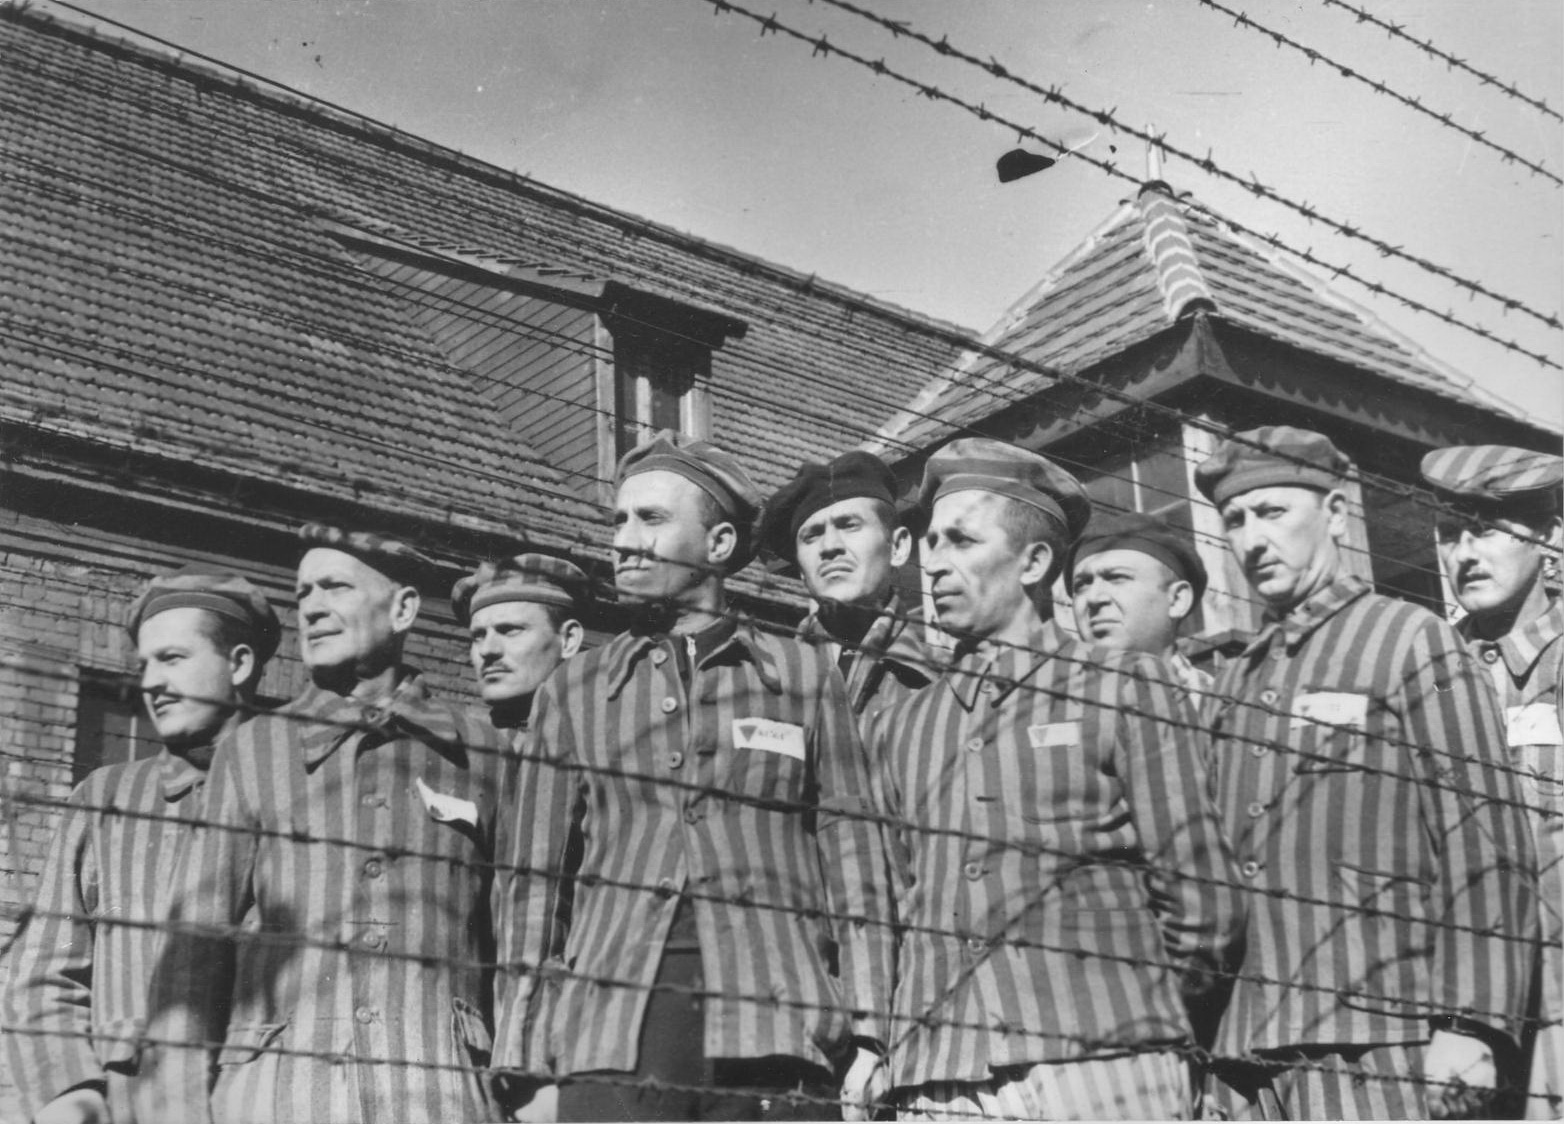 Советские лагеря в войну. Освенцим-Биркенау концентрационный лагерь. Нацистская Германии контрационные лагеря.